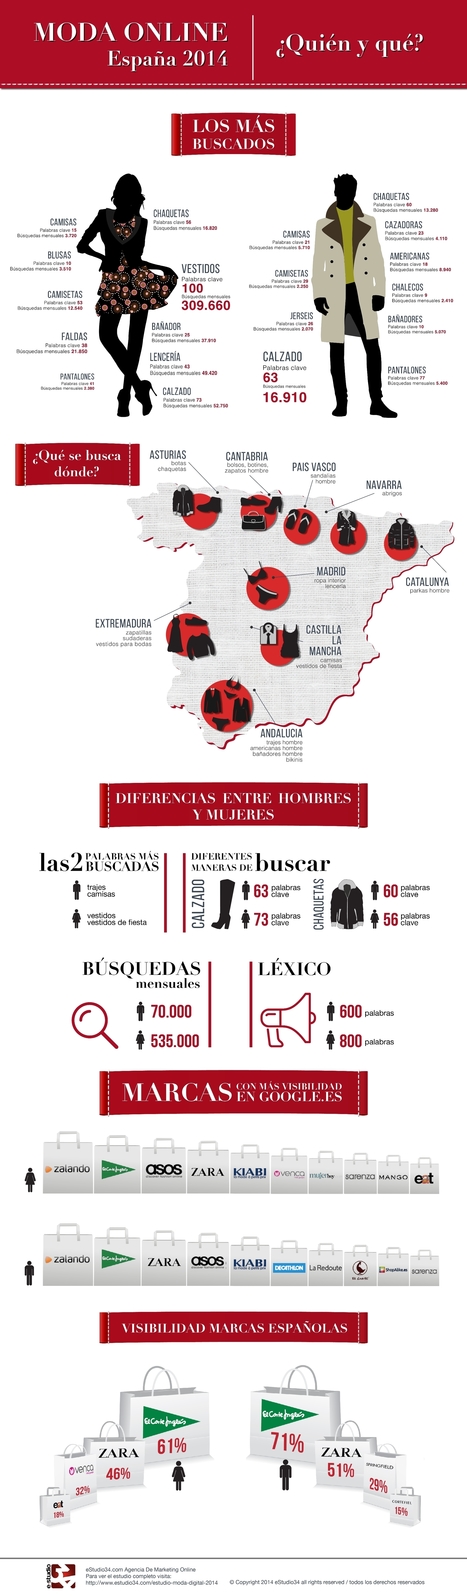 Moda online en España: Quién y Qué #infografia #infographic #marketing | Seo, Social Media Marketing | Scoop.it